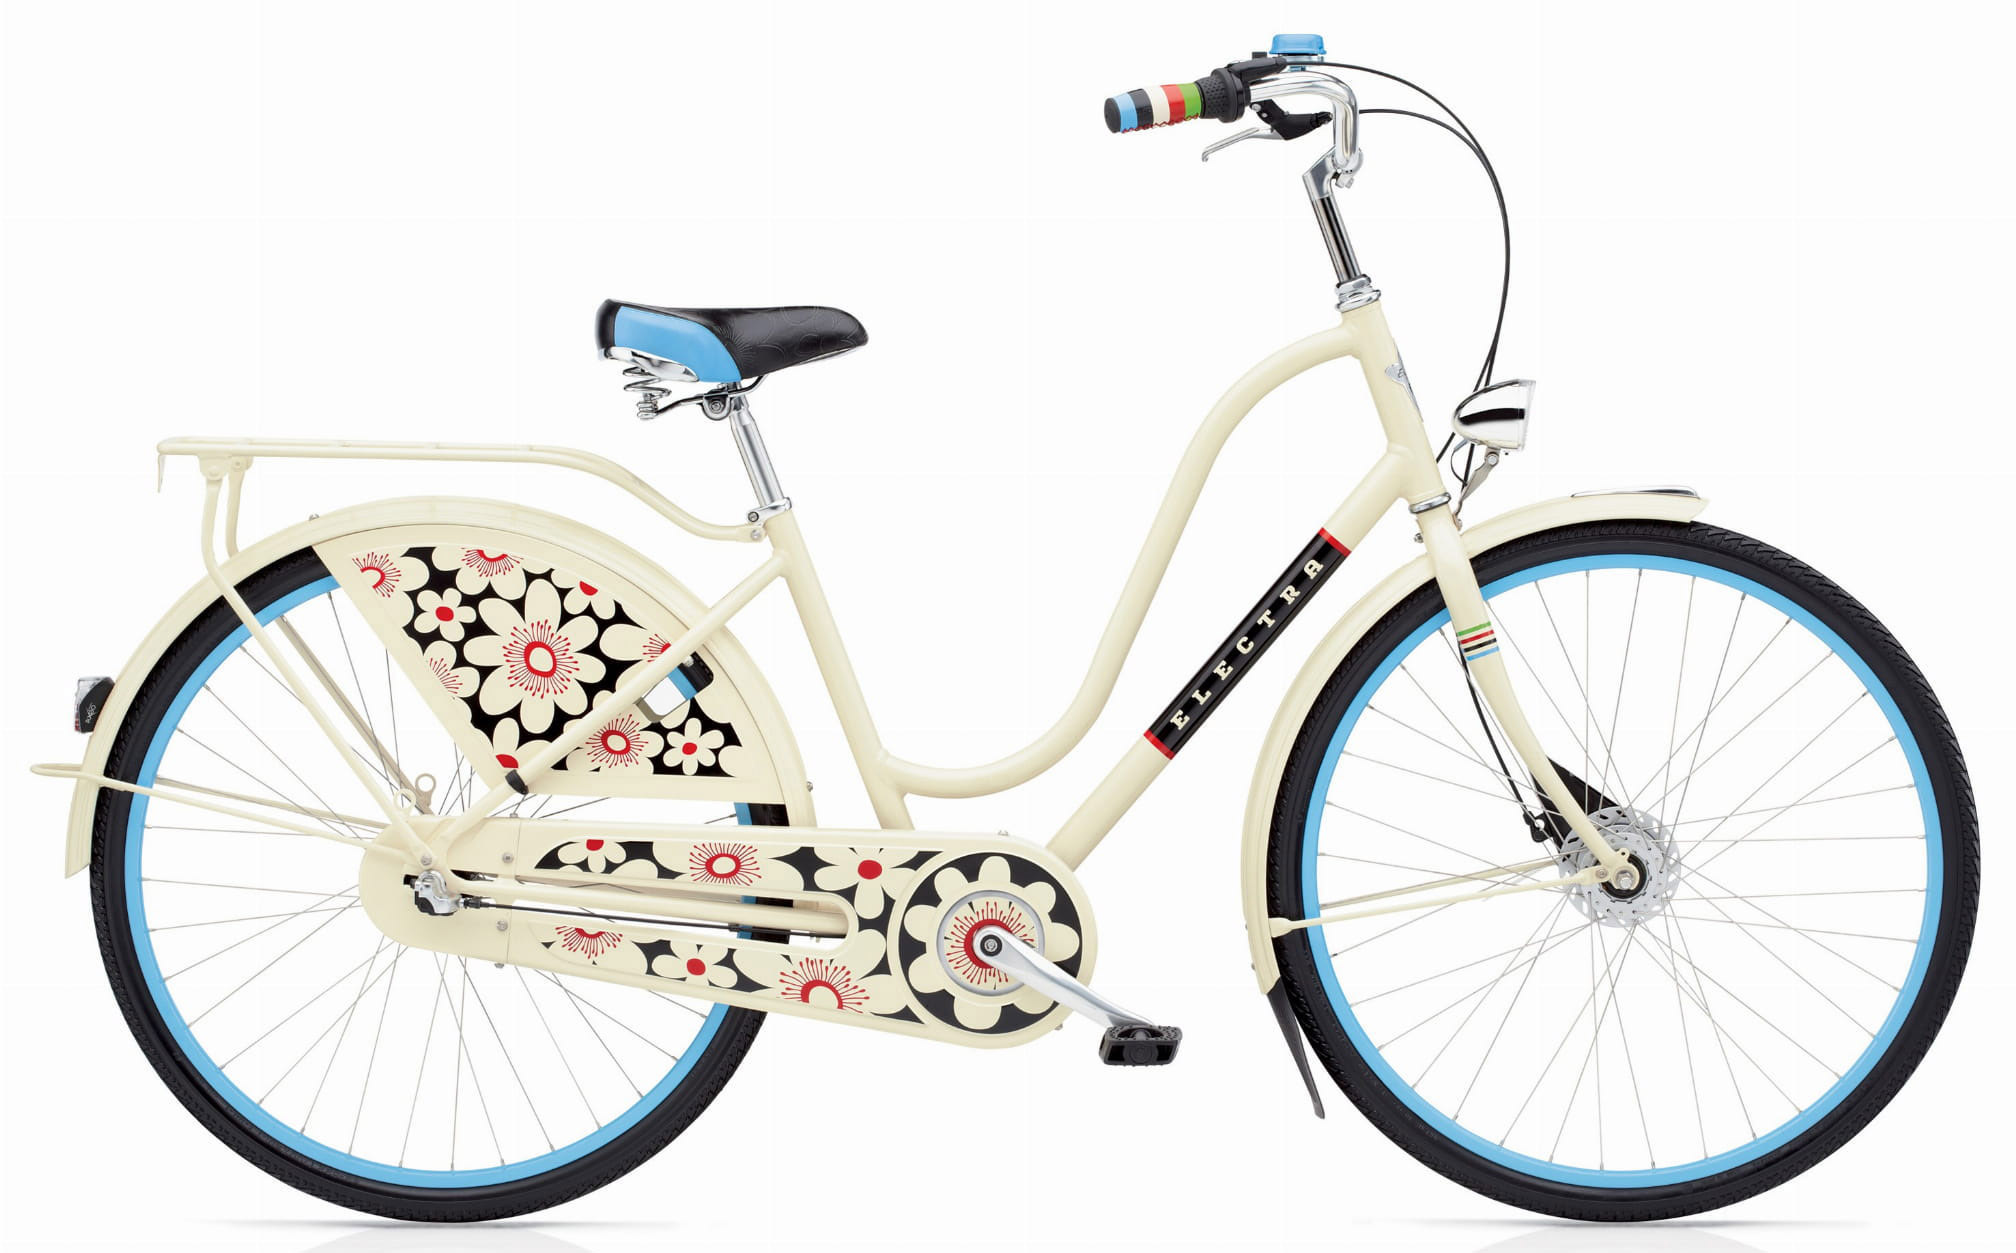  Отзывы о Женском велосипеде Electra Amsterdam Fashion 3i Ladies 2020